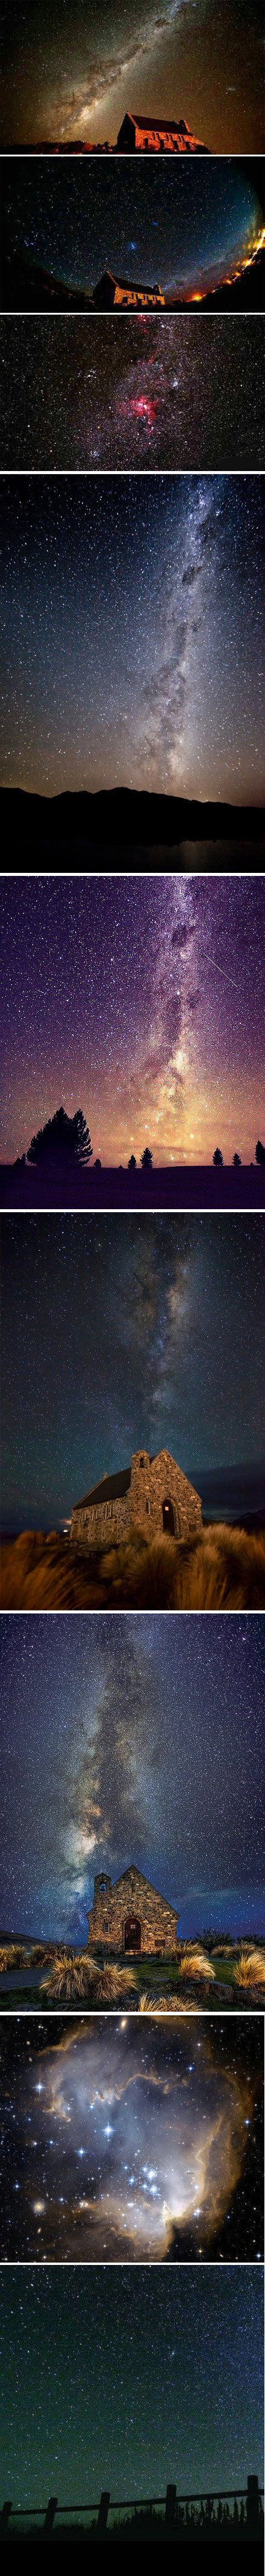 特卡波湖的星空静谧而璀璨,银河和大团星座清晰可见,令人仿佛置身于